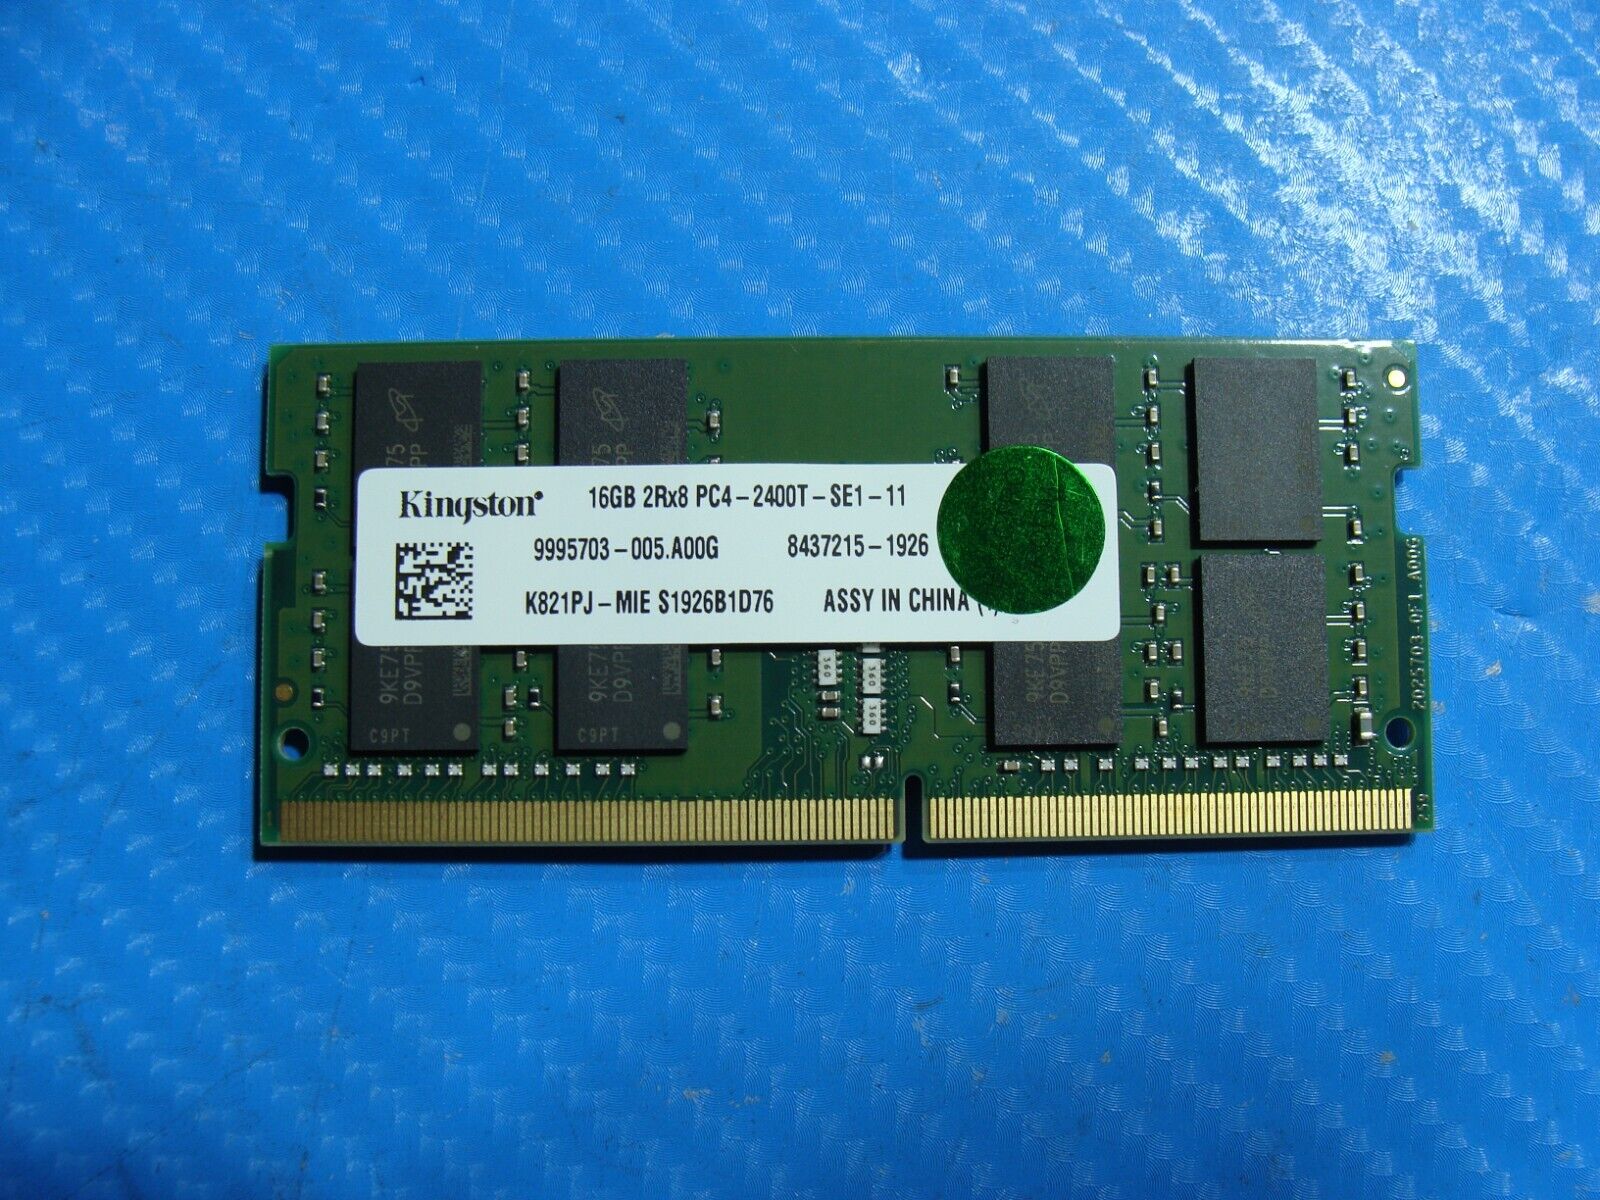 Dell 7390 Kingston 16GB 2Rx8 PC4-2400T Memory Ram So-Dimm K821PJ-MIE